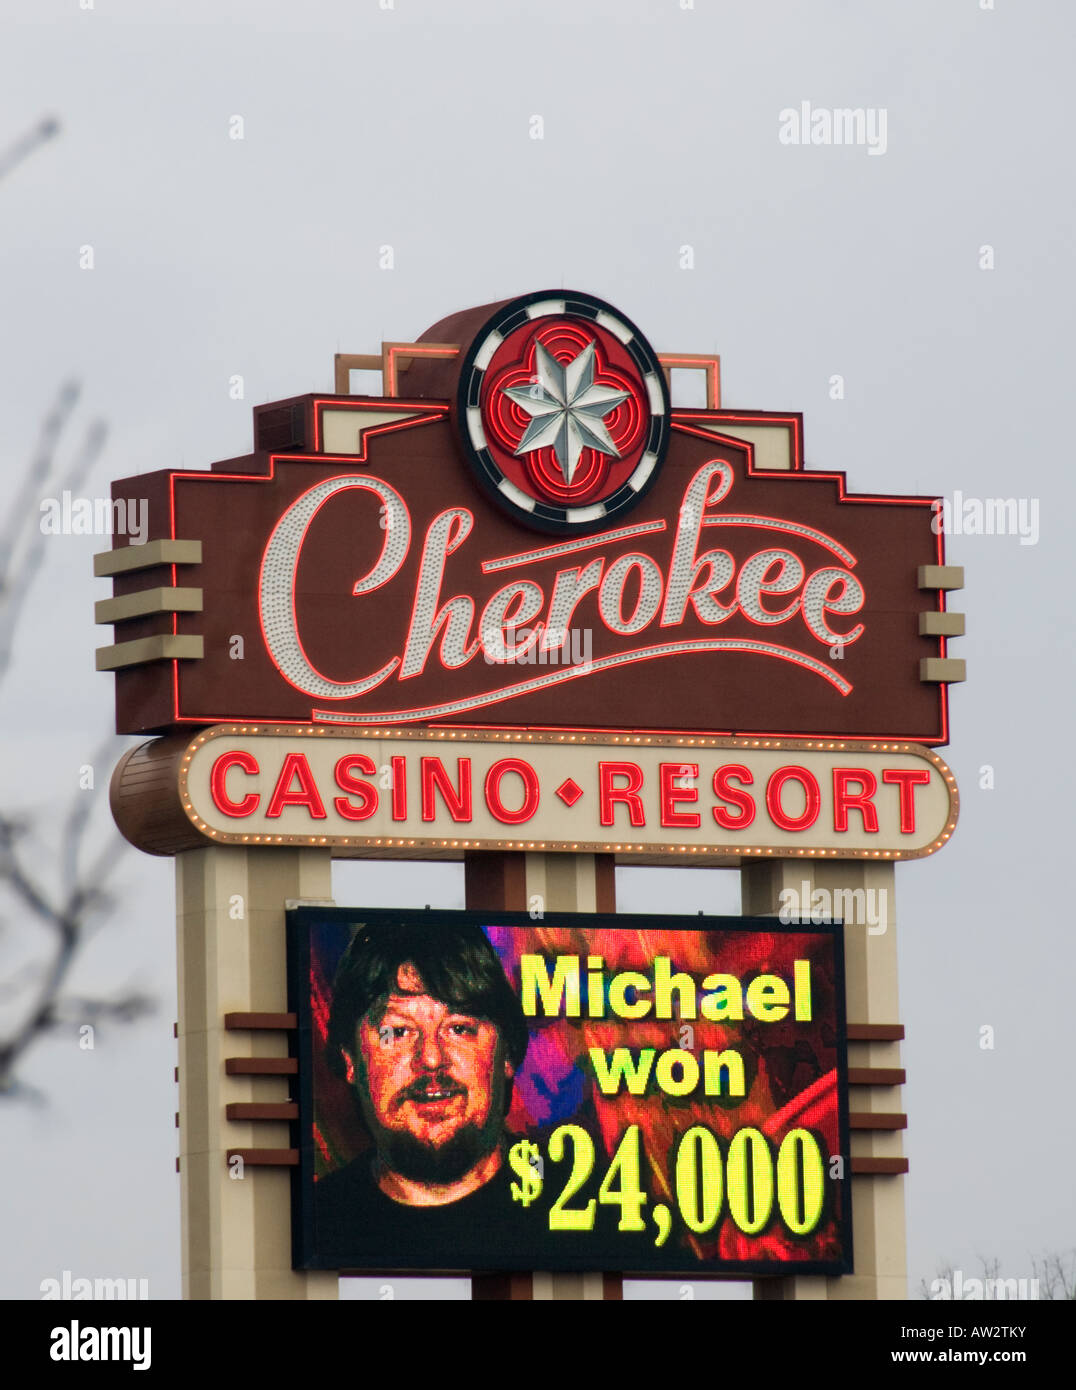 Cherokee Casino Resort sign. Stock Photo